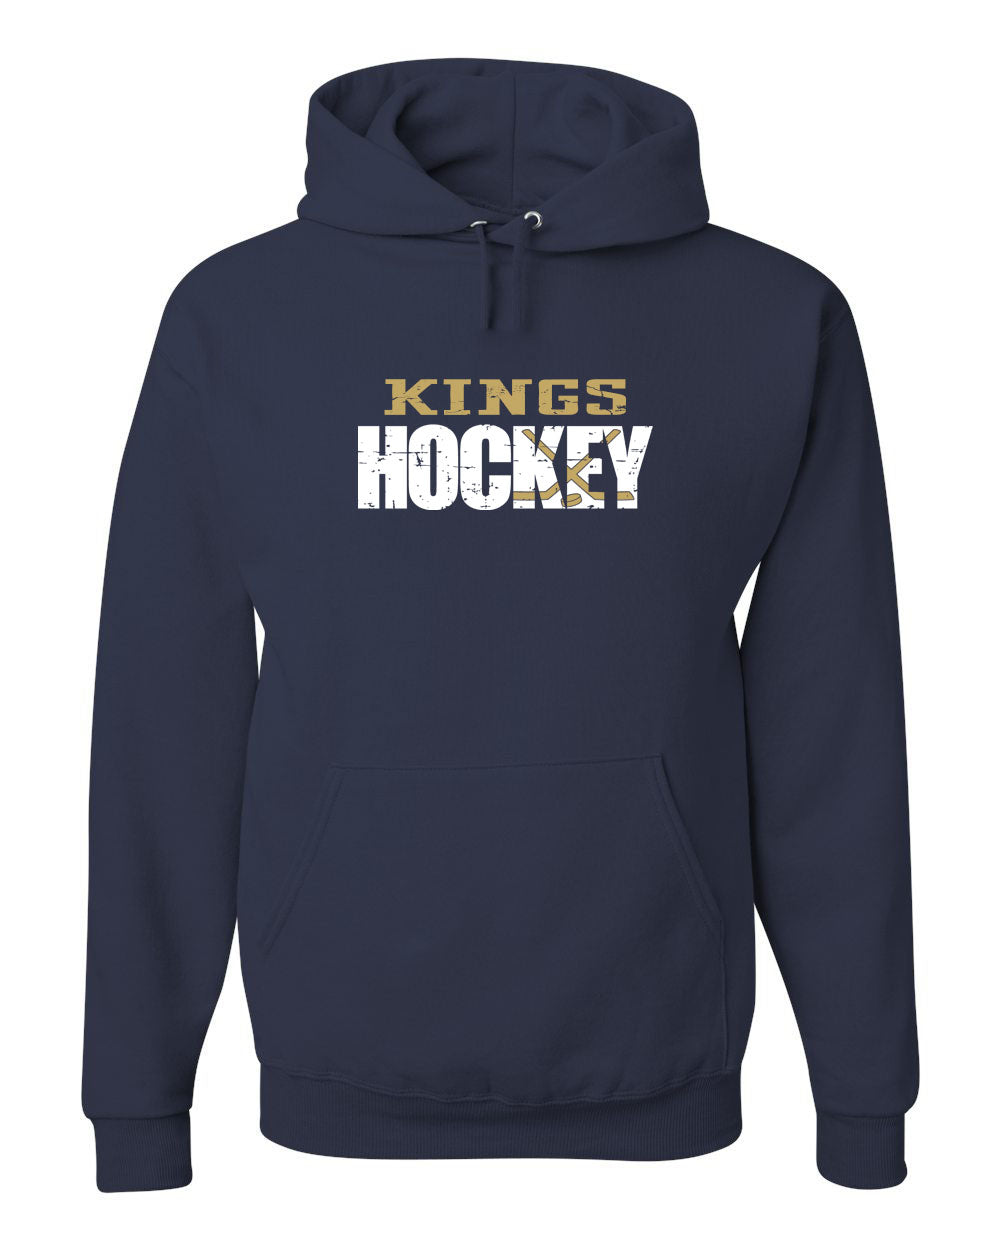 Kings Hockey Distressed Hooded Sweatshirt